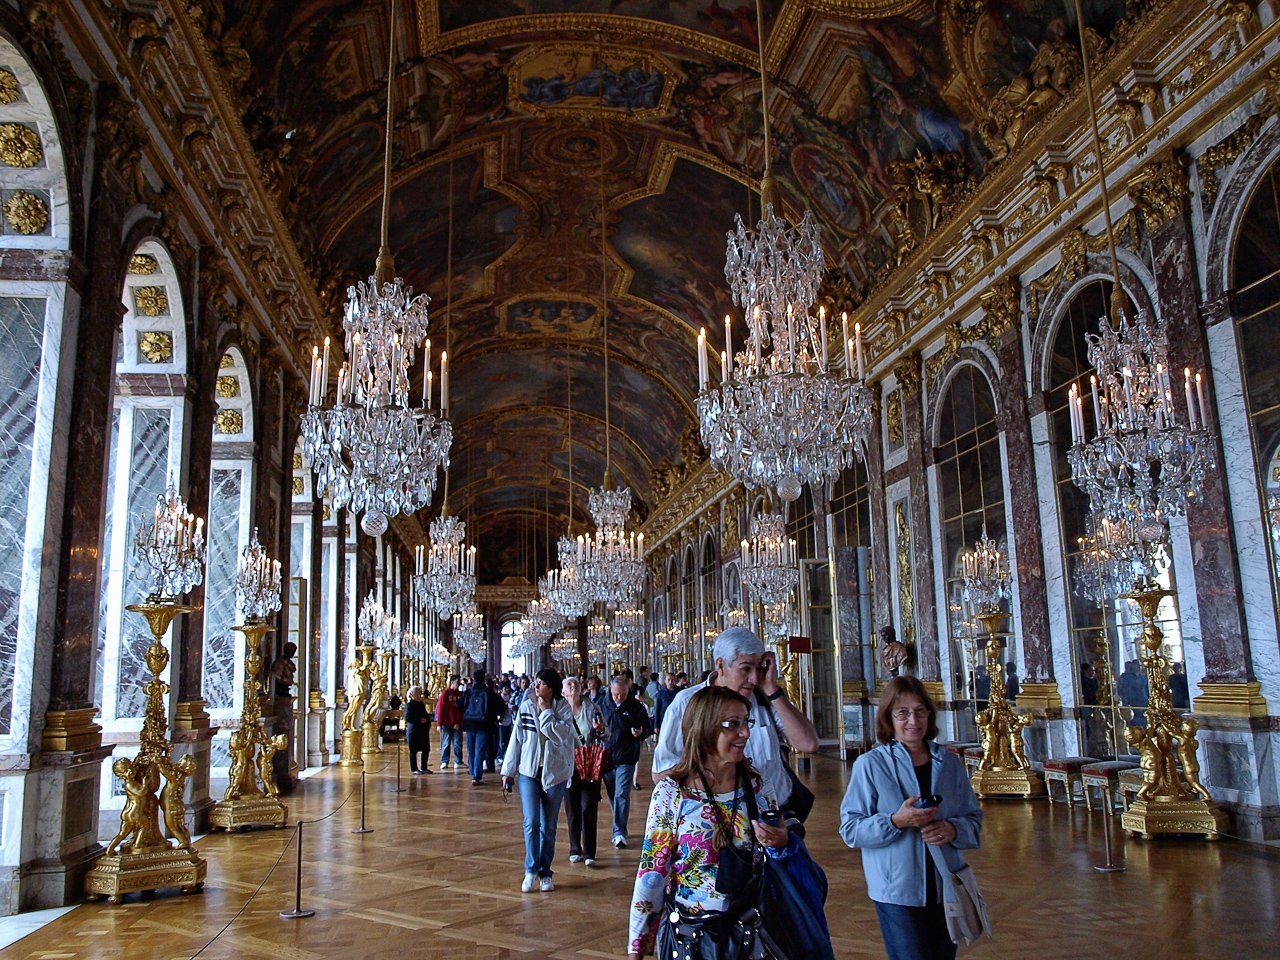 Галереи версаля. Зеркальная галерея Версальского дворца. Зеркальный зал Версальского дворца. Зеркальный зал Версальского дворца во Франции. Версальский дворец Версаль внутри.